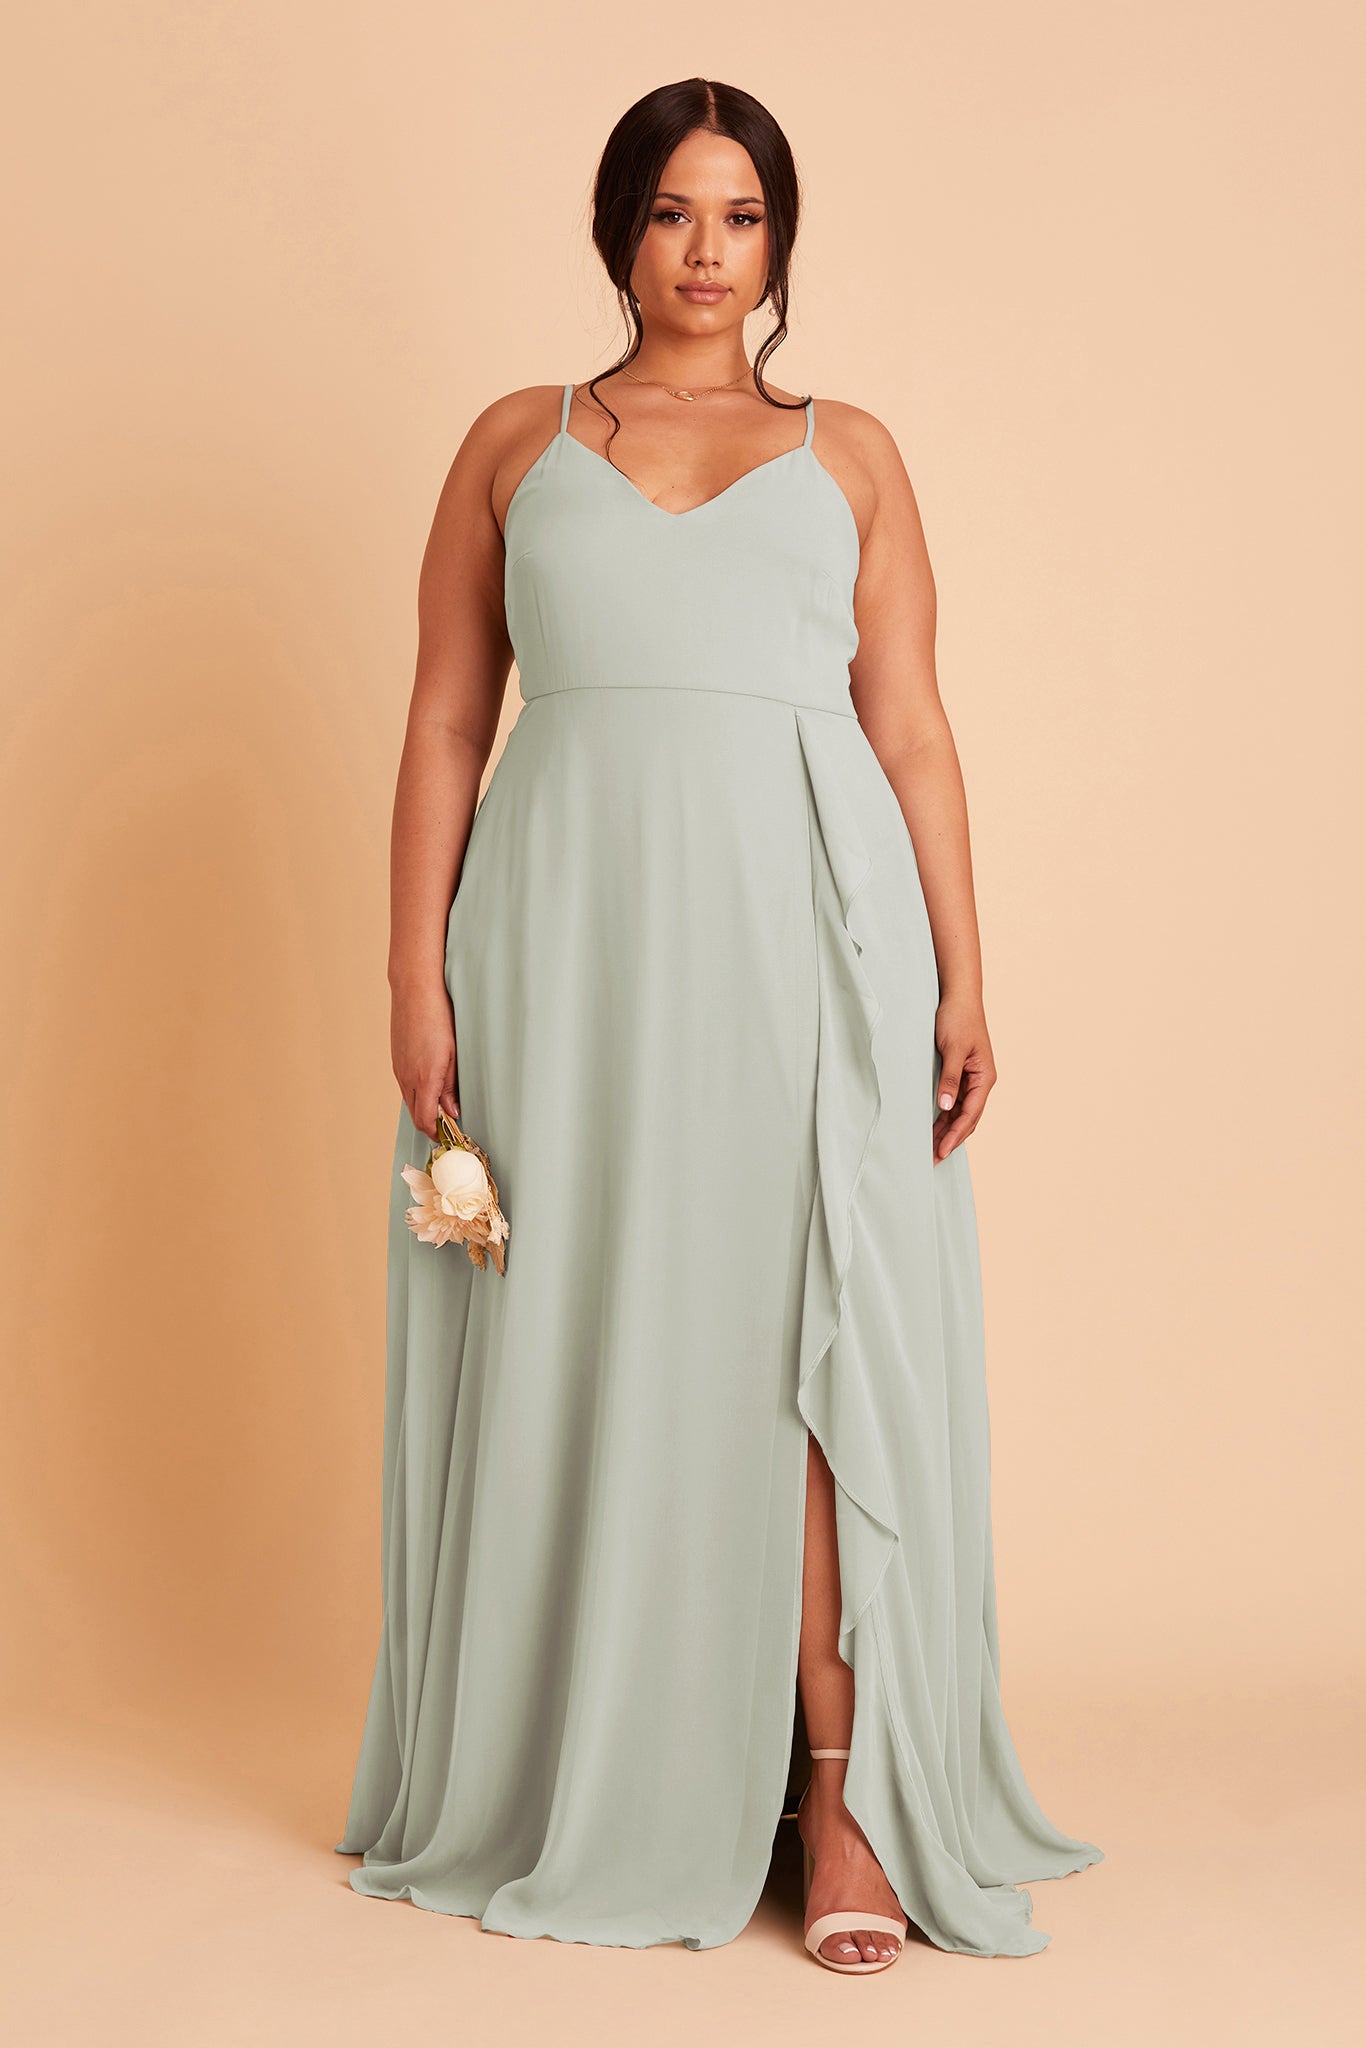 Sage Theresa Chiffon Dress by Birdy Grey